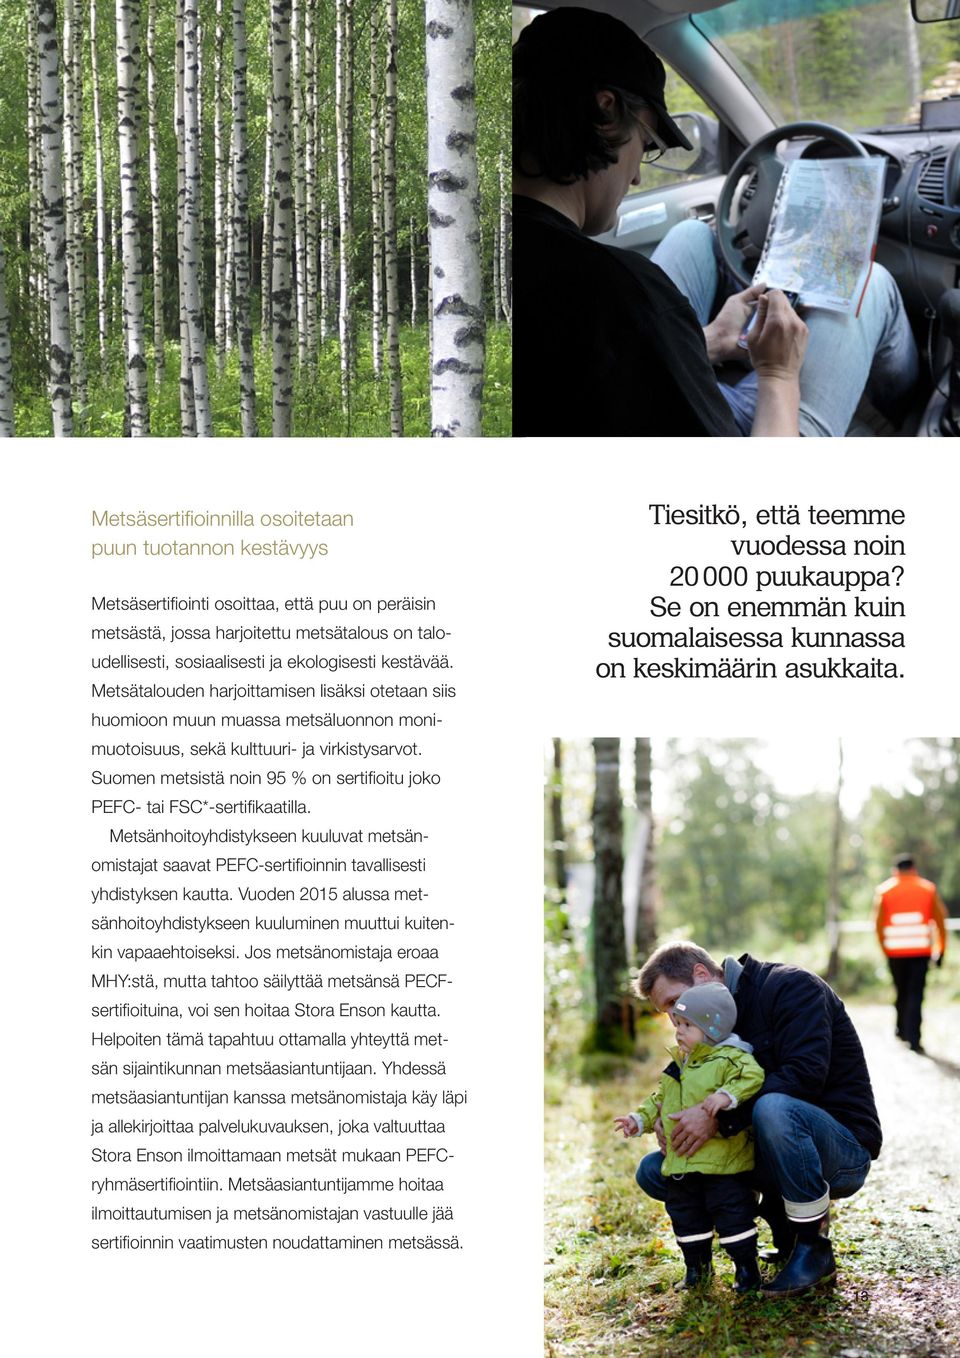 Suomen metsistä noin 95 % on sertifioitu joko PEFC- tai FSC*-sertifikaatilla. Metsänhoitoyhdistykseen kuuluvat metsänomistajat saavat PEFC-sertifioinnin tavallisesti yhdistyksen kautta.